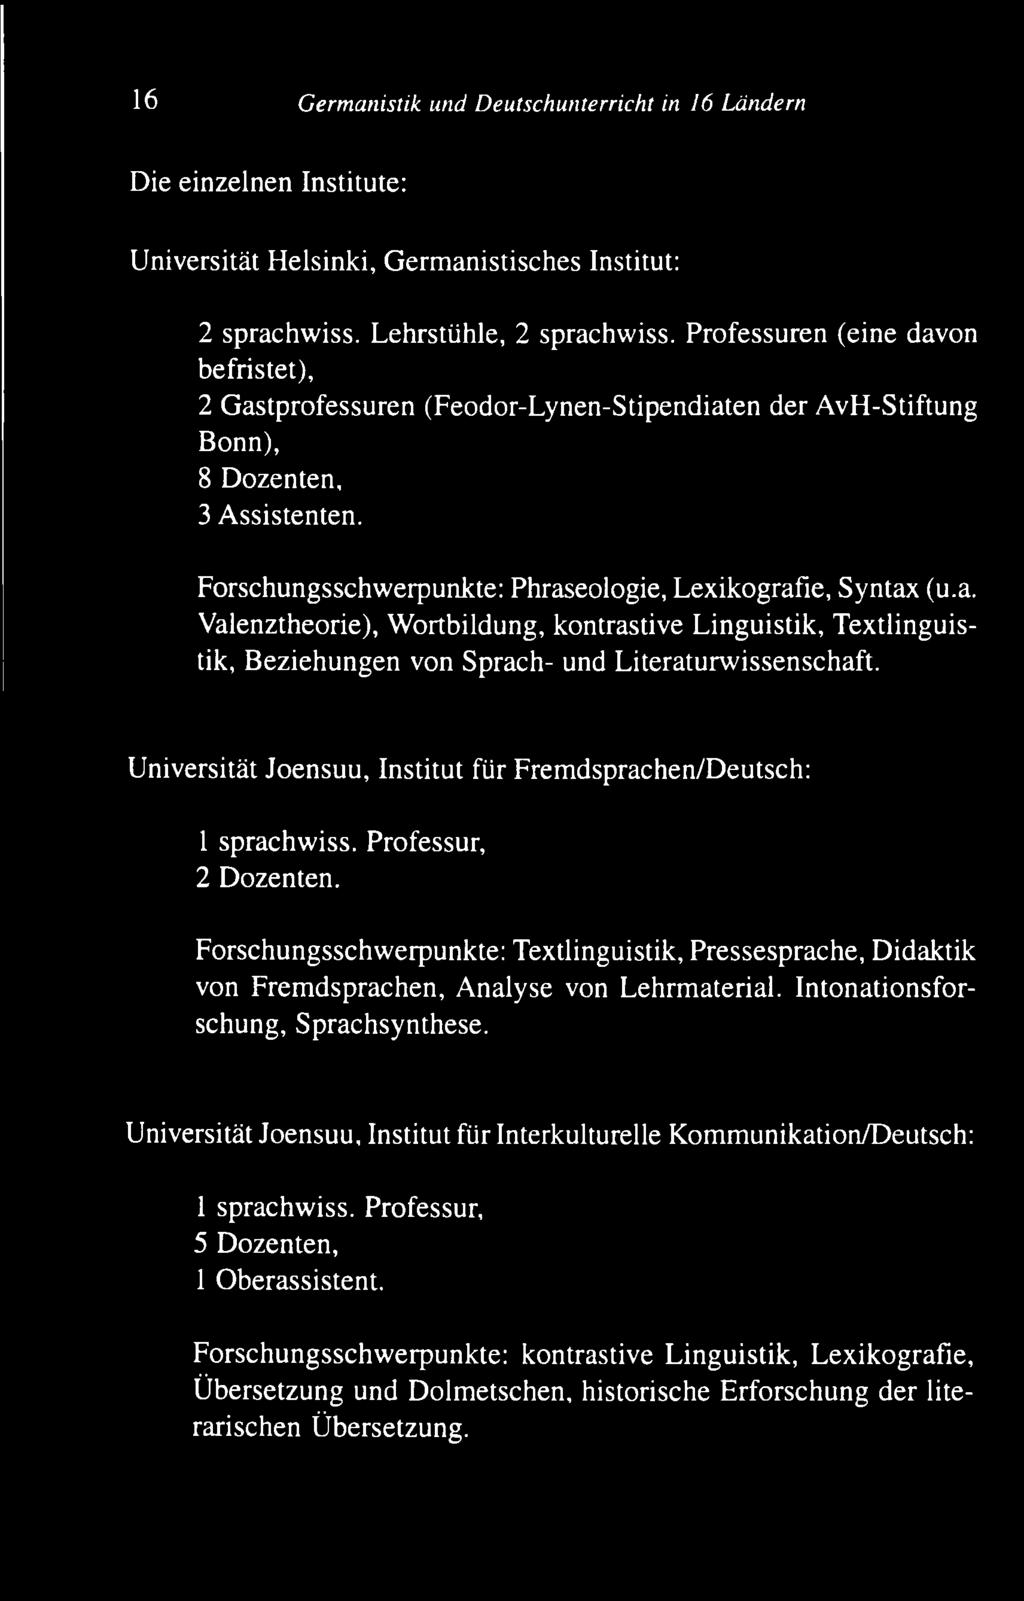 U niversität Joensuu, Institut für F rem dsprachen/d eutsch: 1 sprachw iss. Professur, 2 Dozenten.